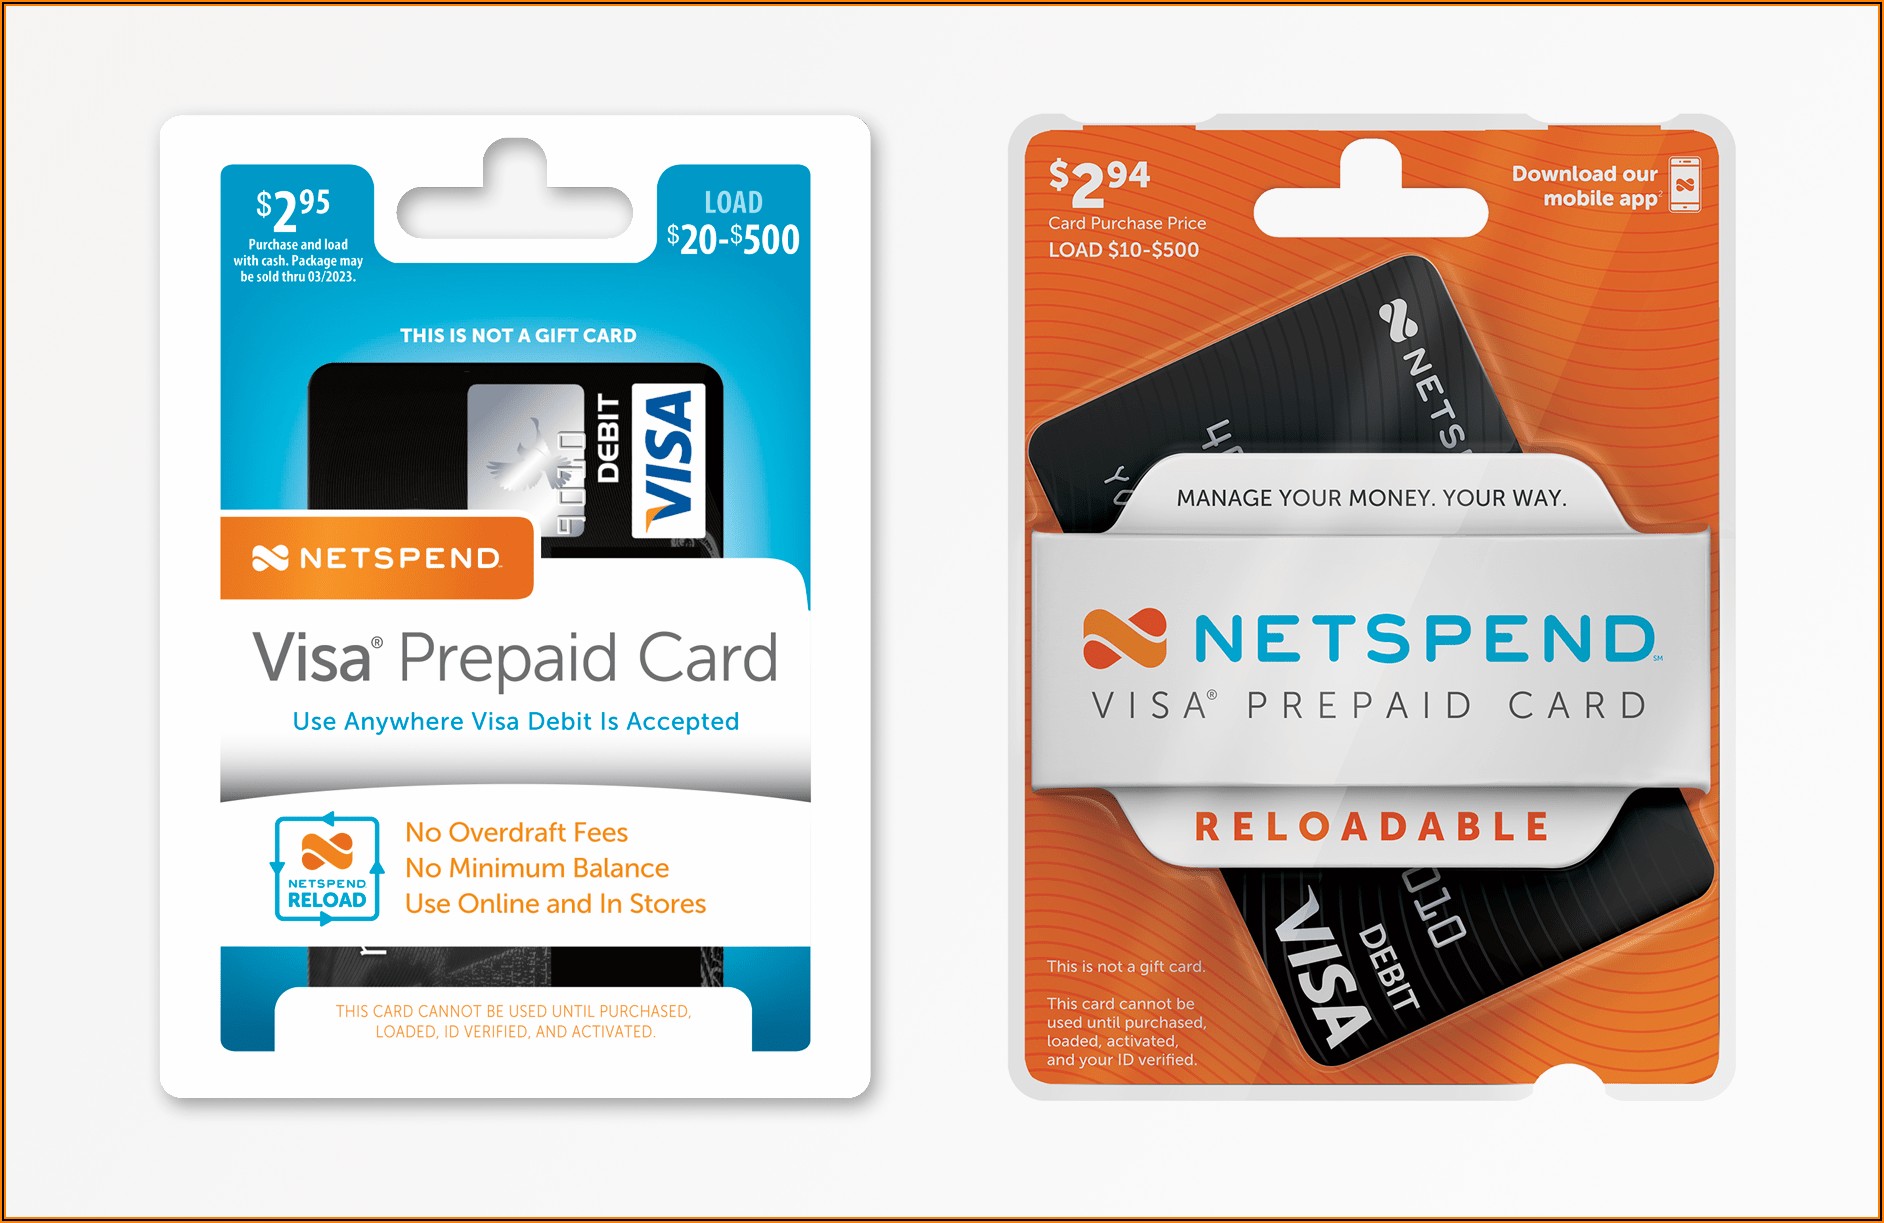 Netspend Business Card Reviews